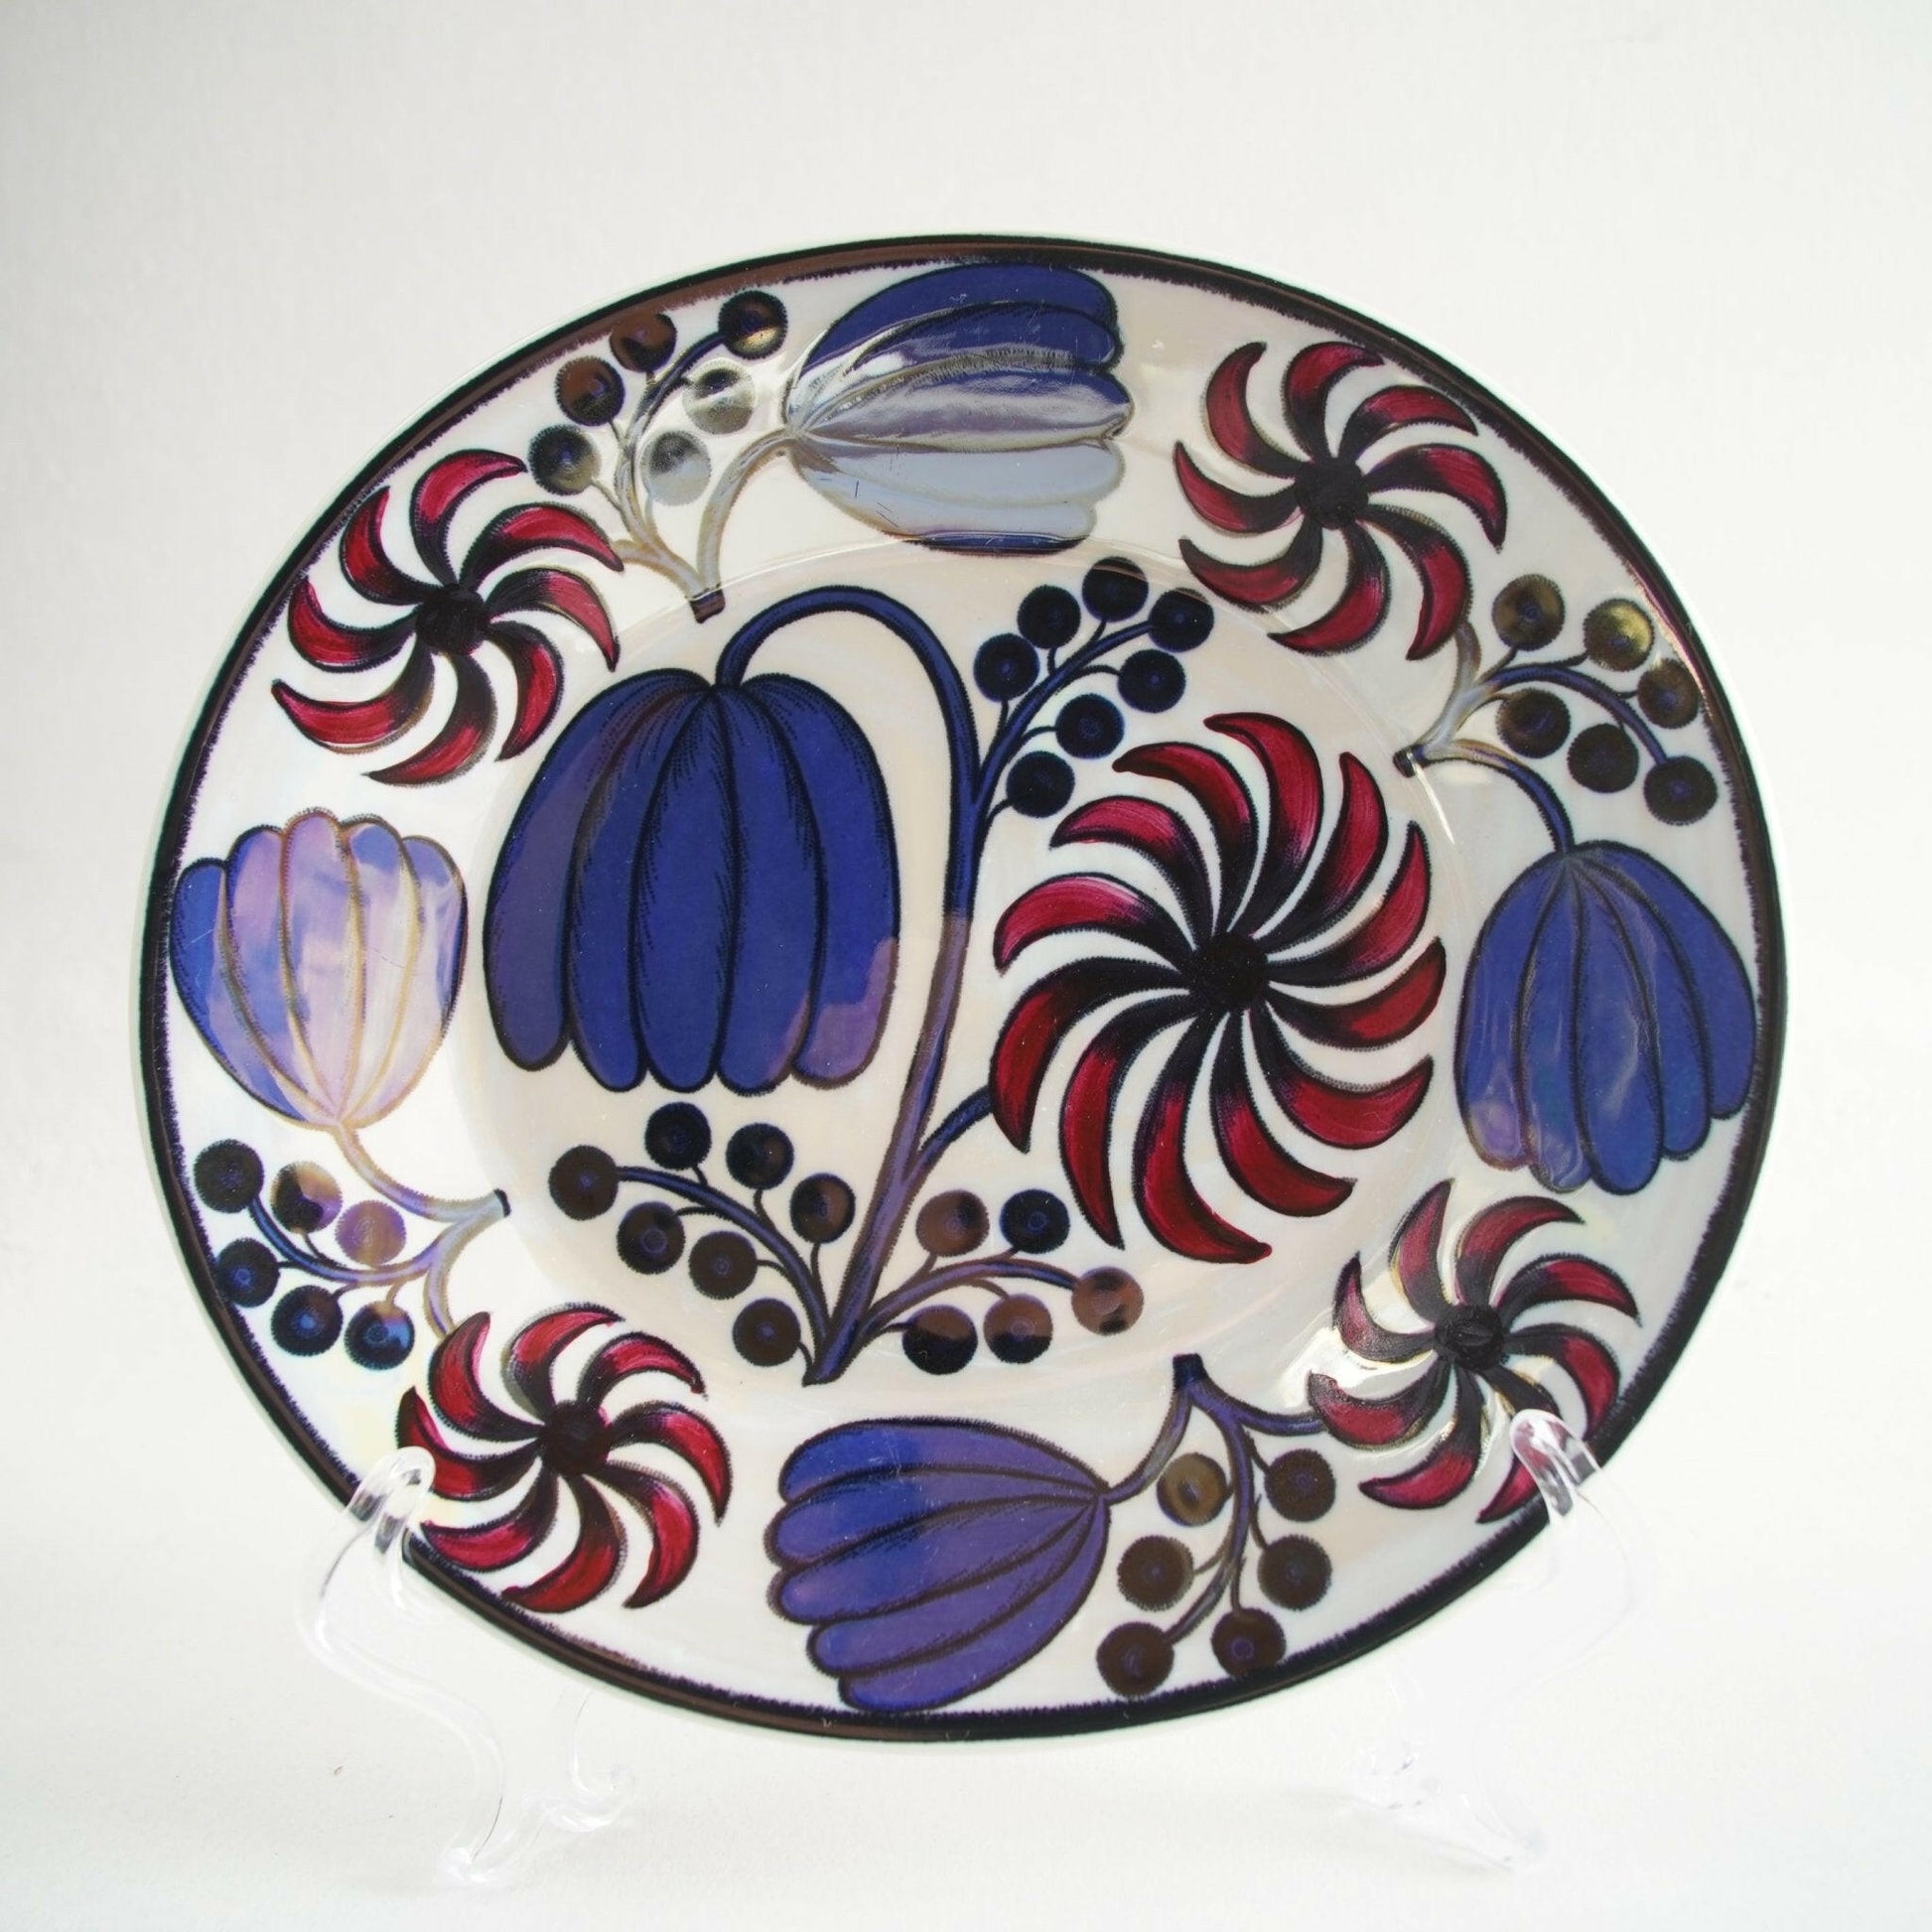 ARABIA ビルガー・カイピアイネン（Birger Kaipiainen）アートプレート 21cm 飾り皿 ARABIA   